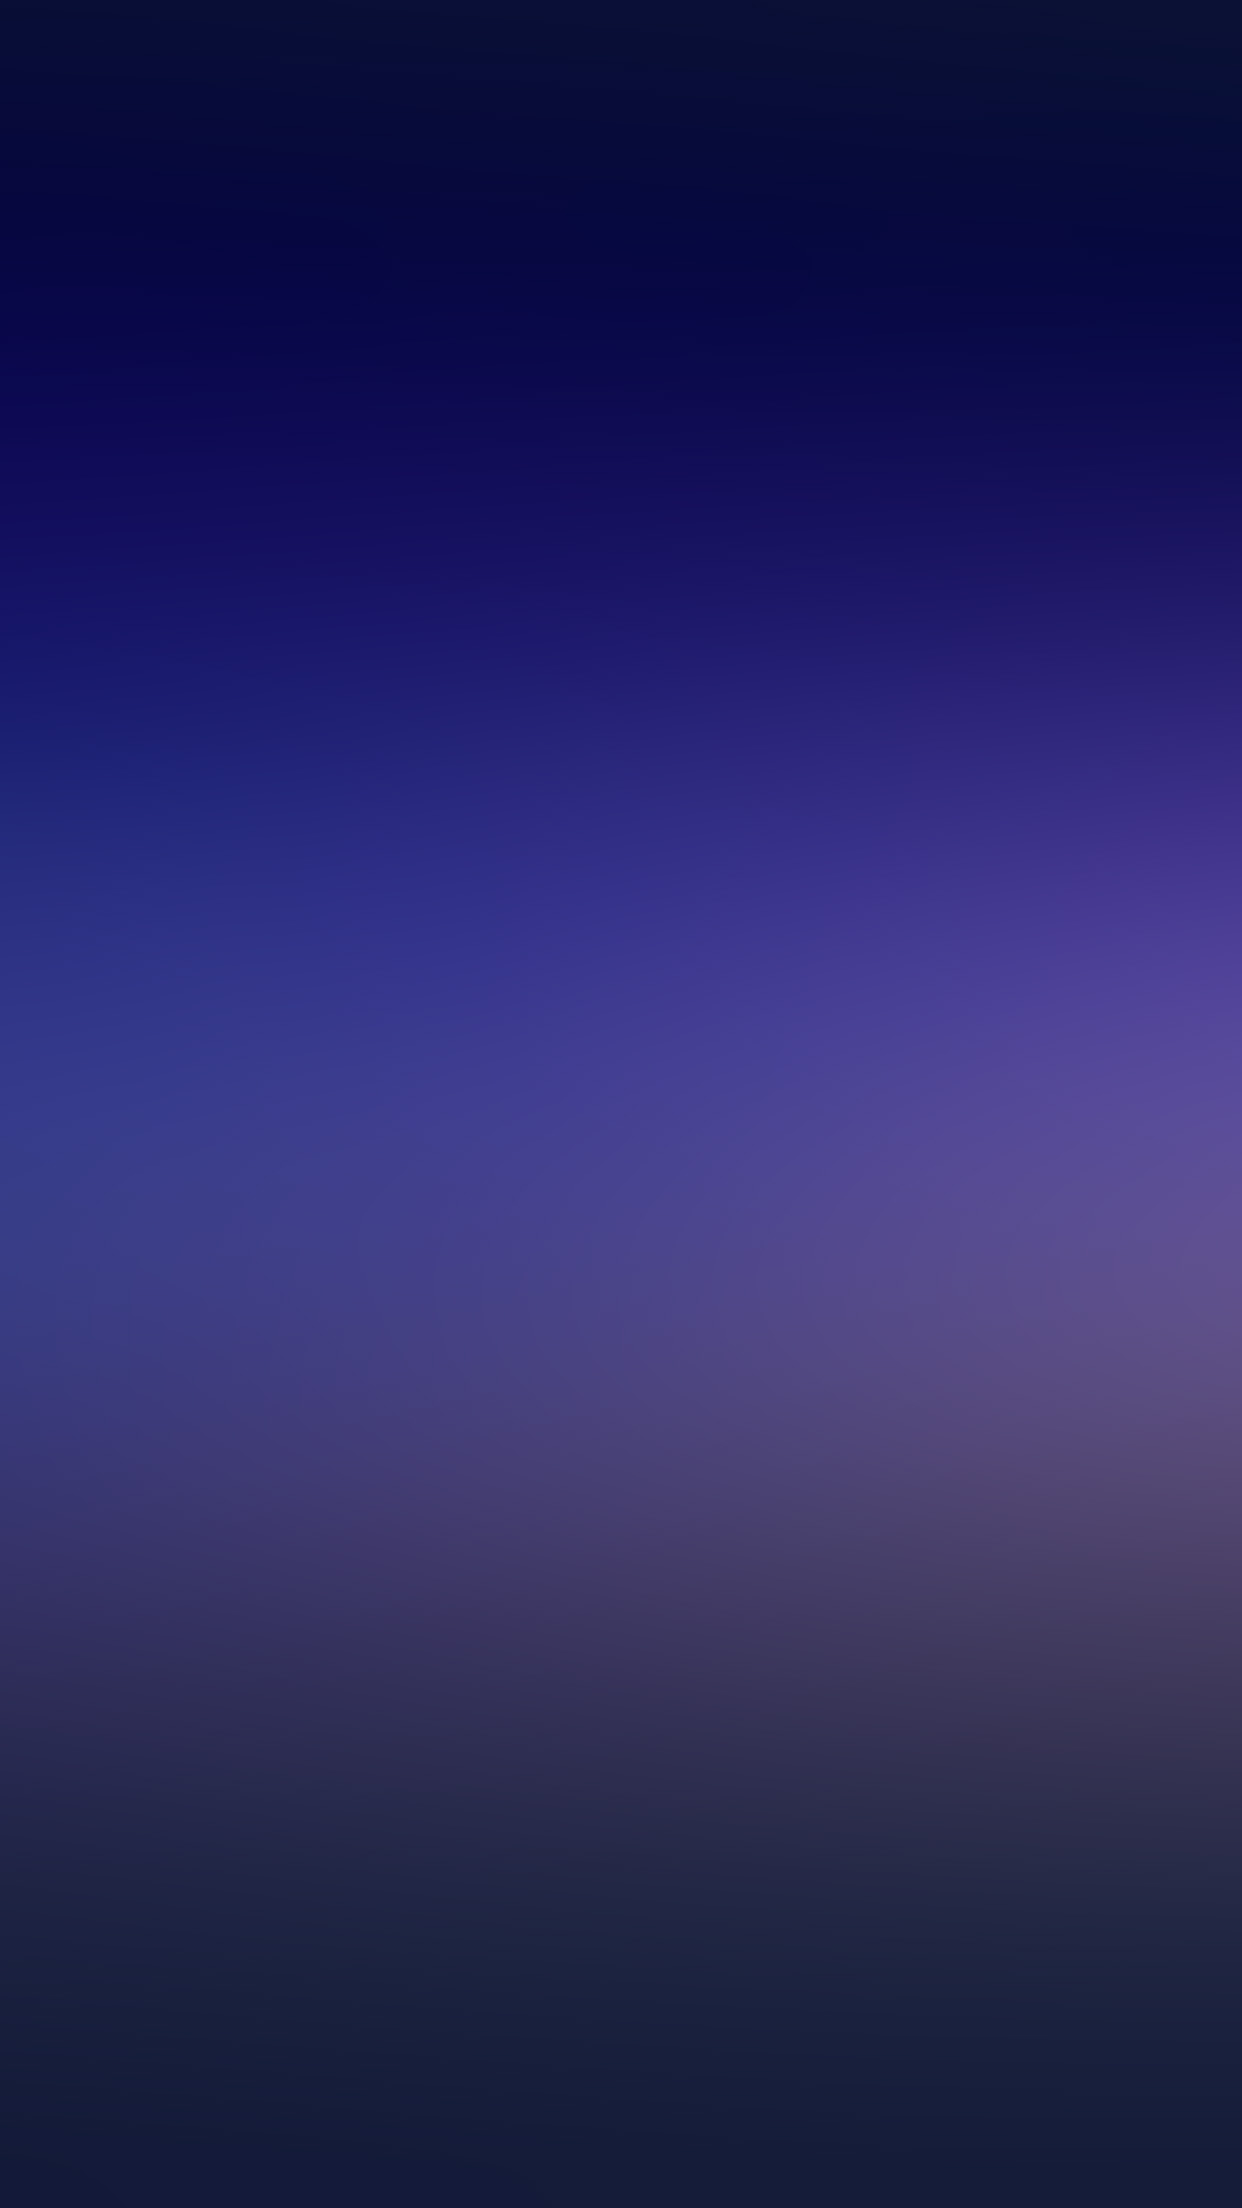 iPhone X wallpaper. blue sky ocean gradation blur